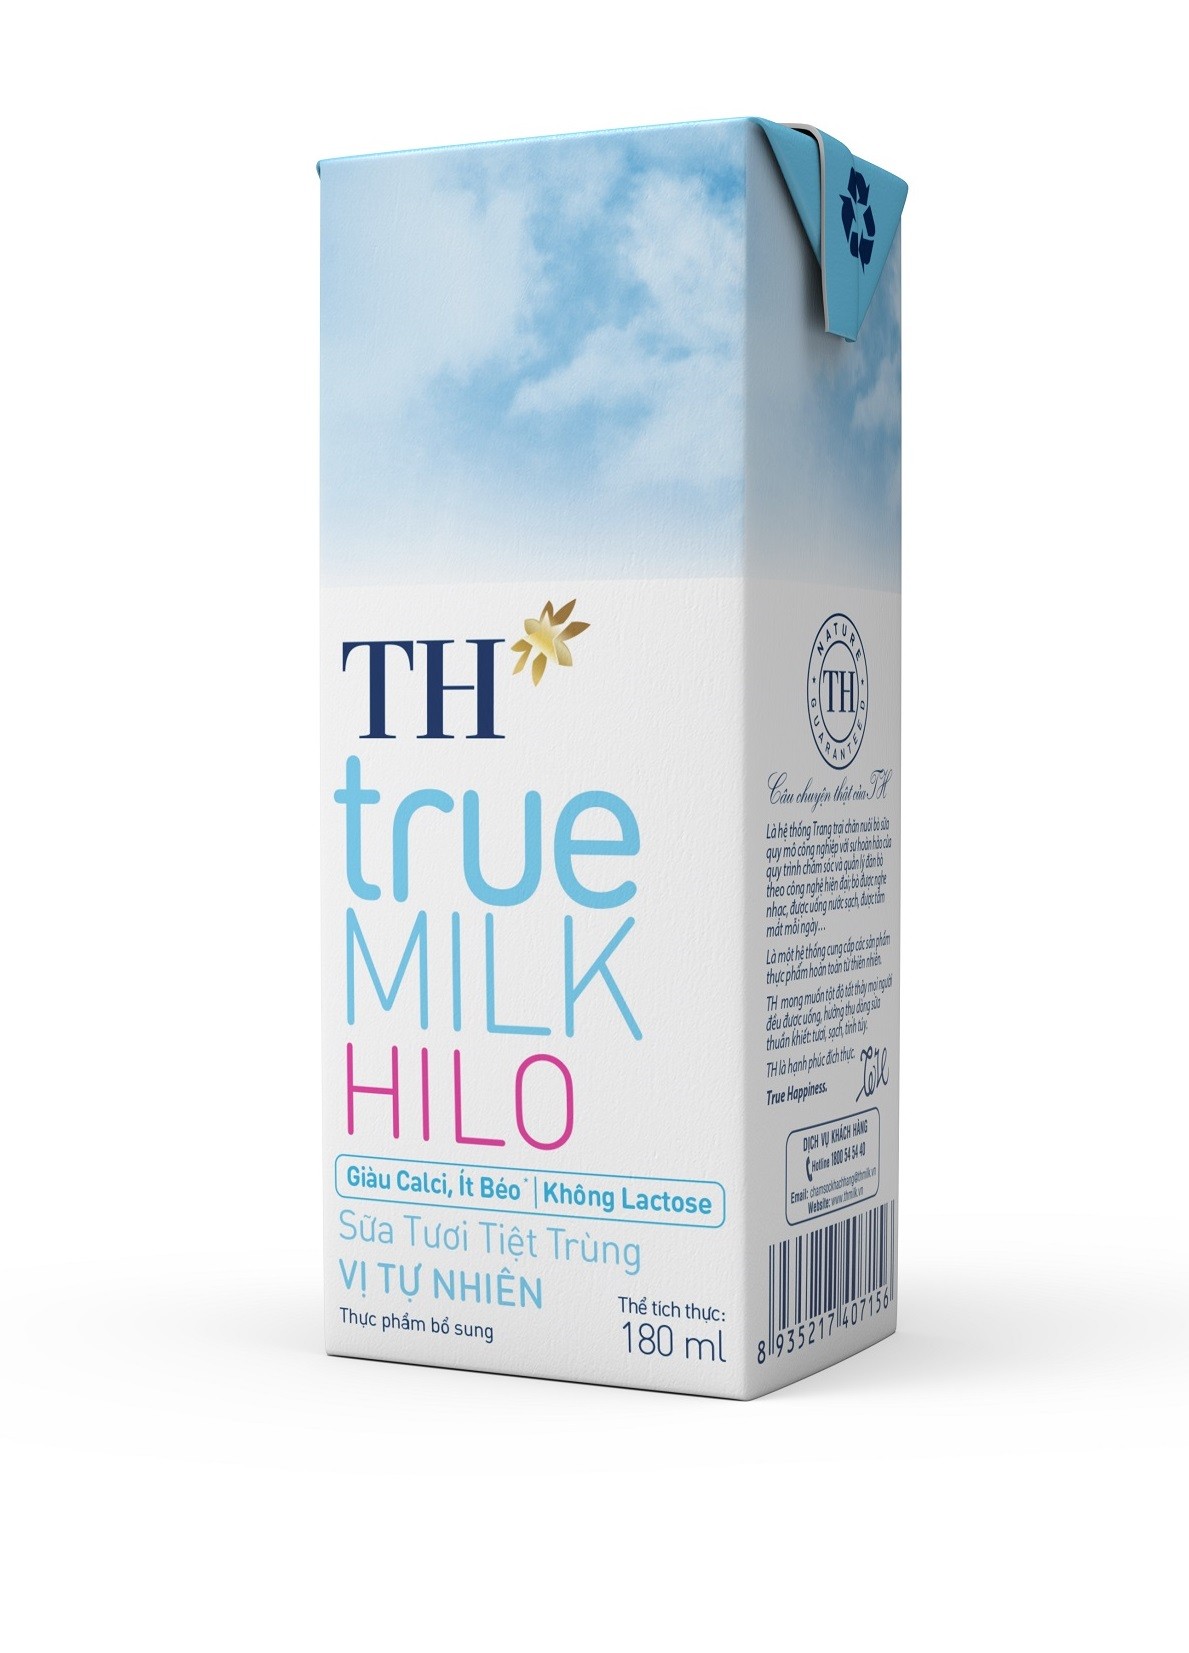 Sữa tươi tăng calci, mẹ an tâm với TH true MILK HILO